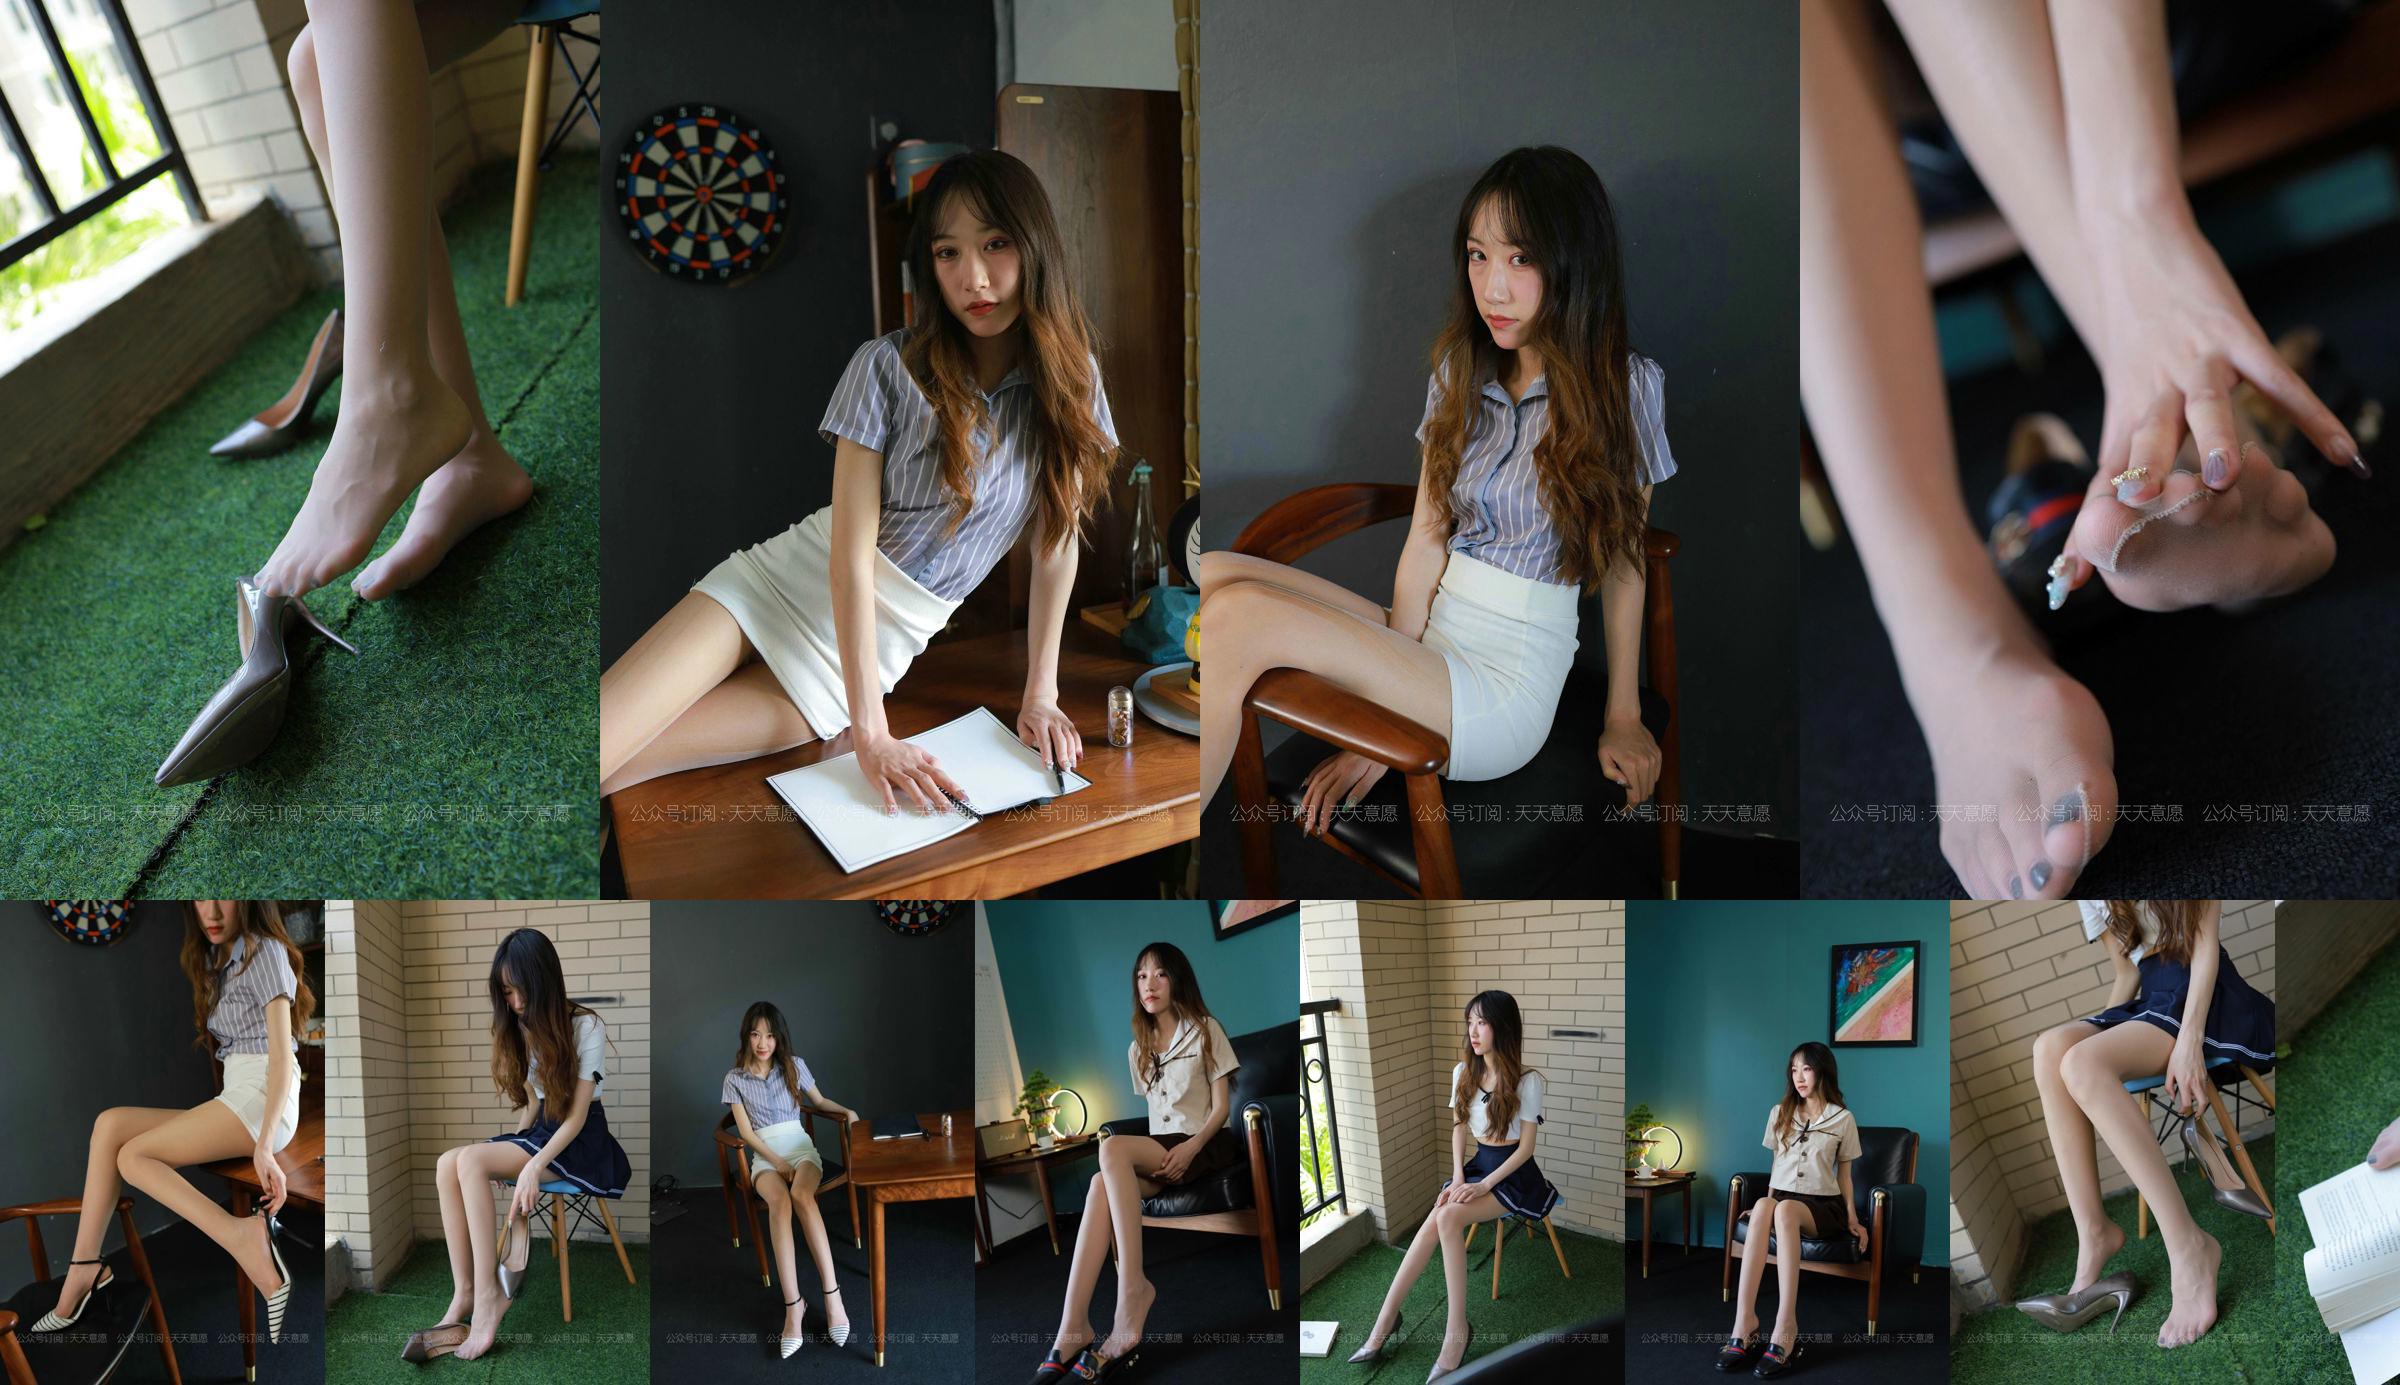 [IESS 奇思 趣向] Người mẫu: Yiyi "Cô gái có đôi chân dài" No.9ae874 Trang 1